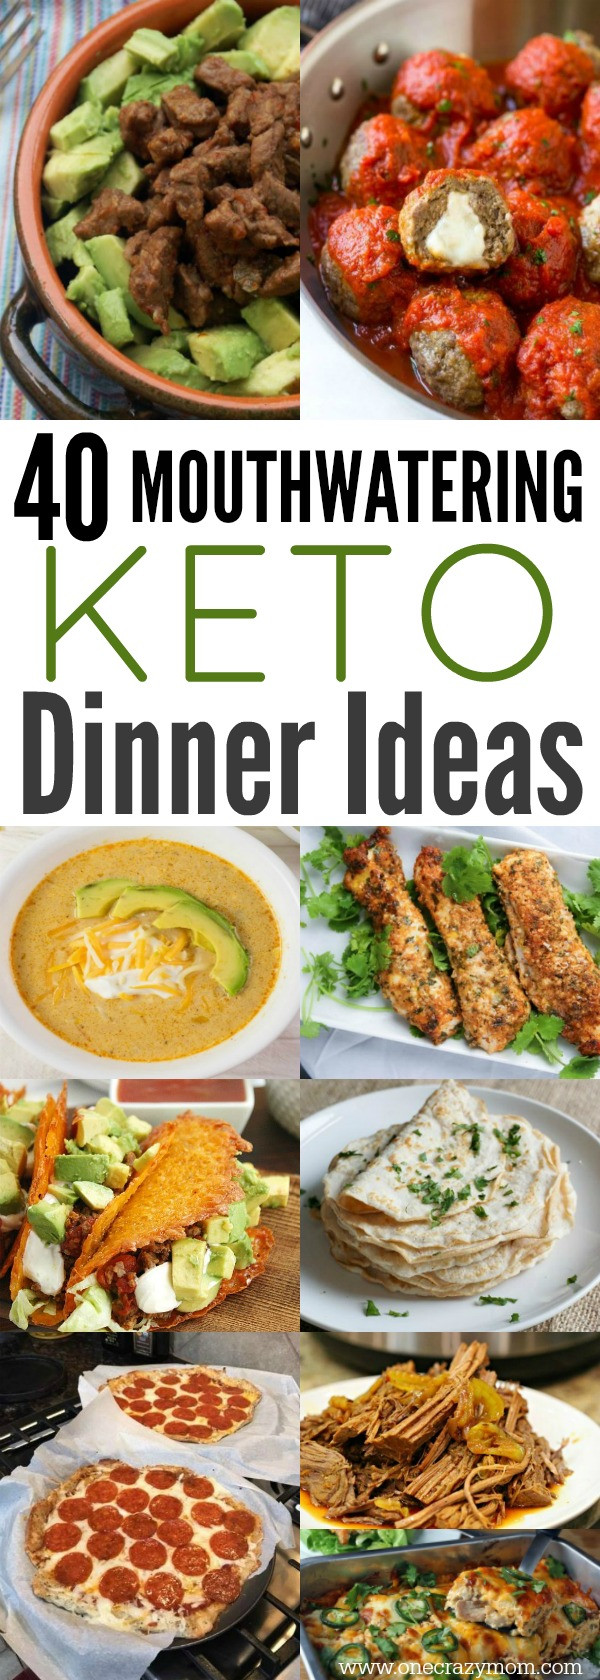 Easy Keto Dinner Ideas
 Easy Keto Dinner Ideas 40 Easy Keto Dinner Recipes